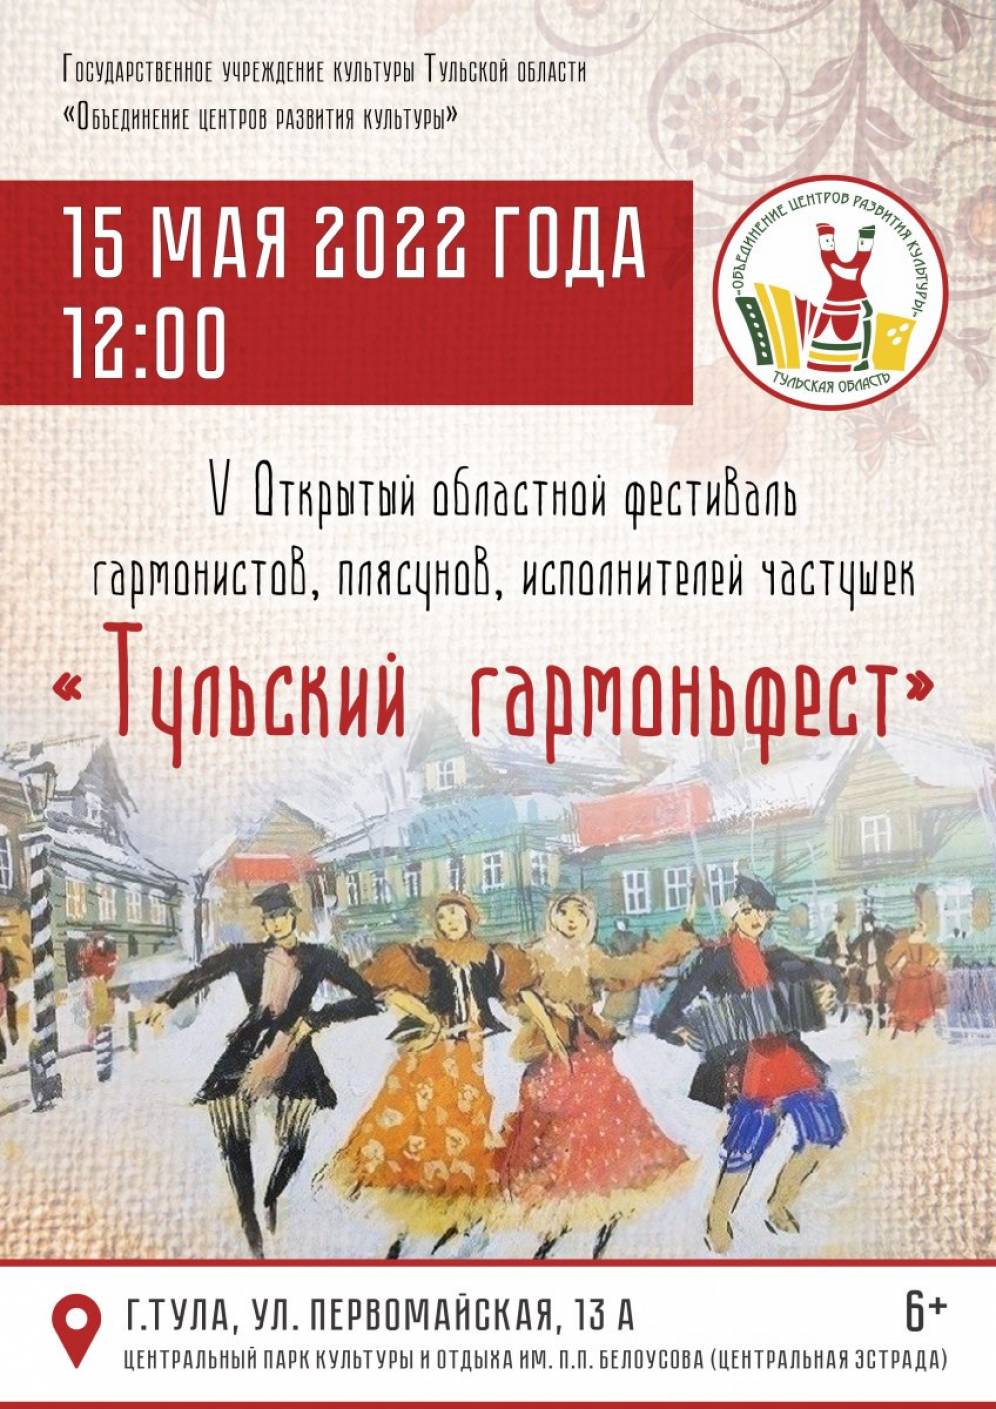 Жителей области приглашают на фестиваль «Тульский гармоньфест»